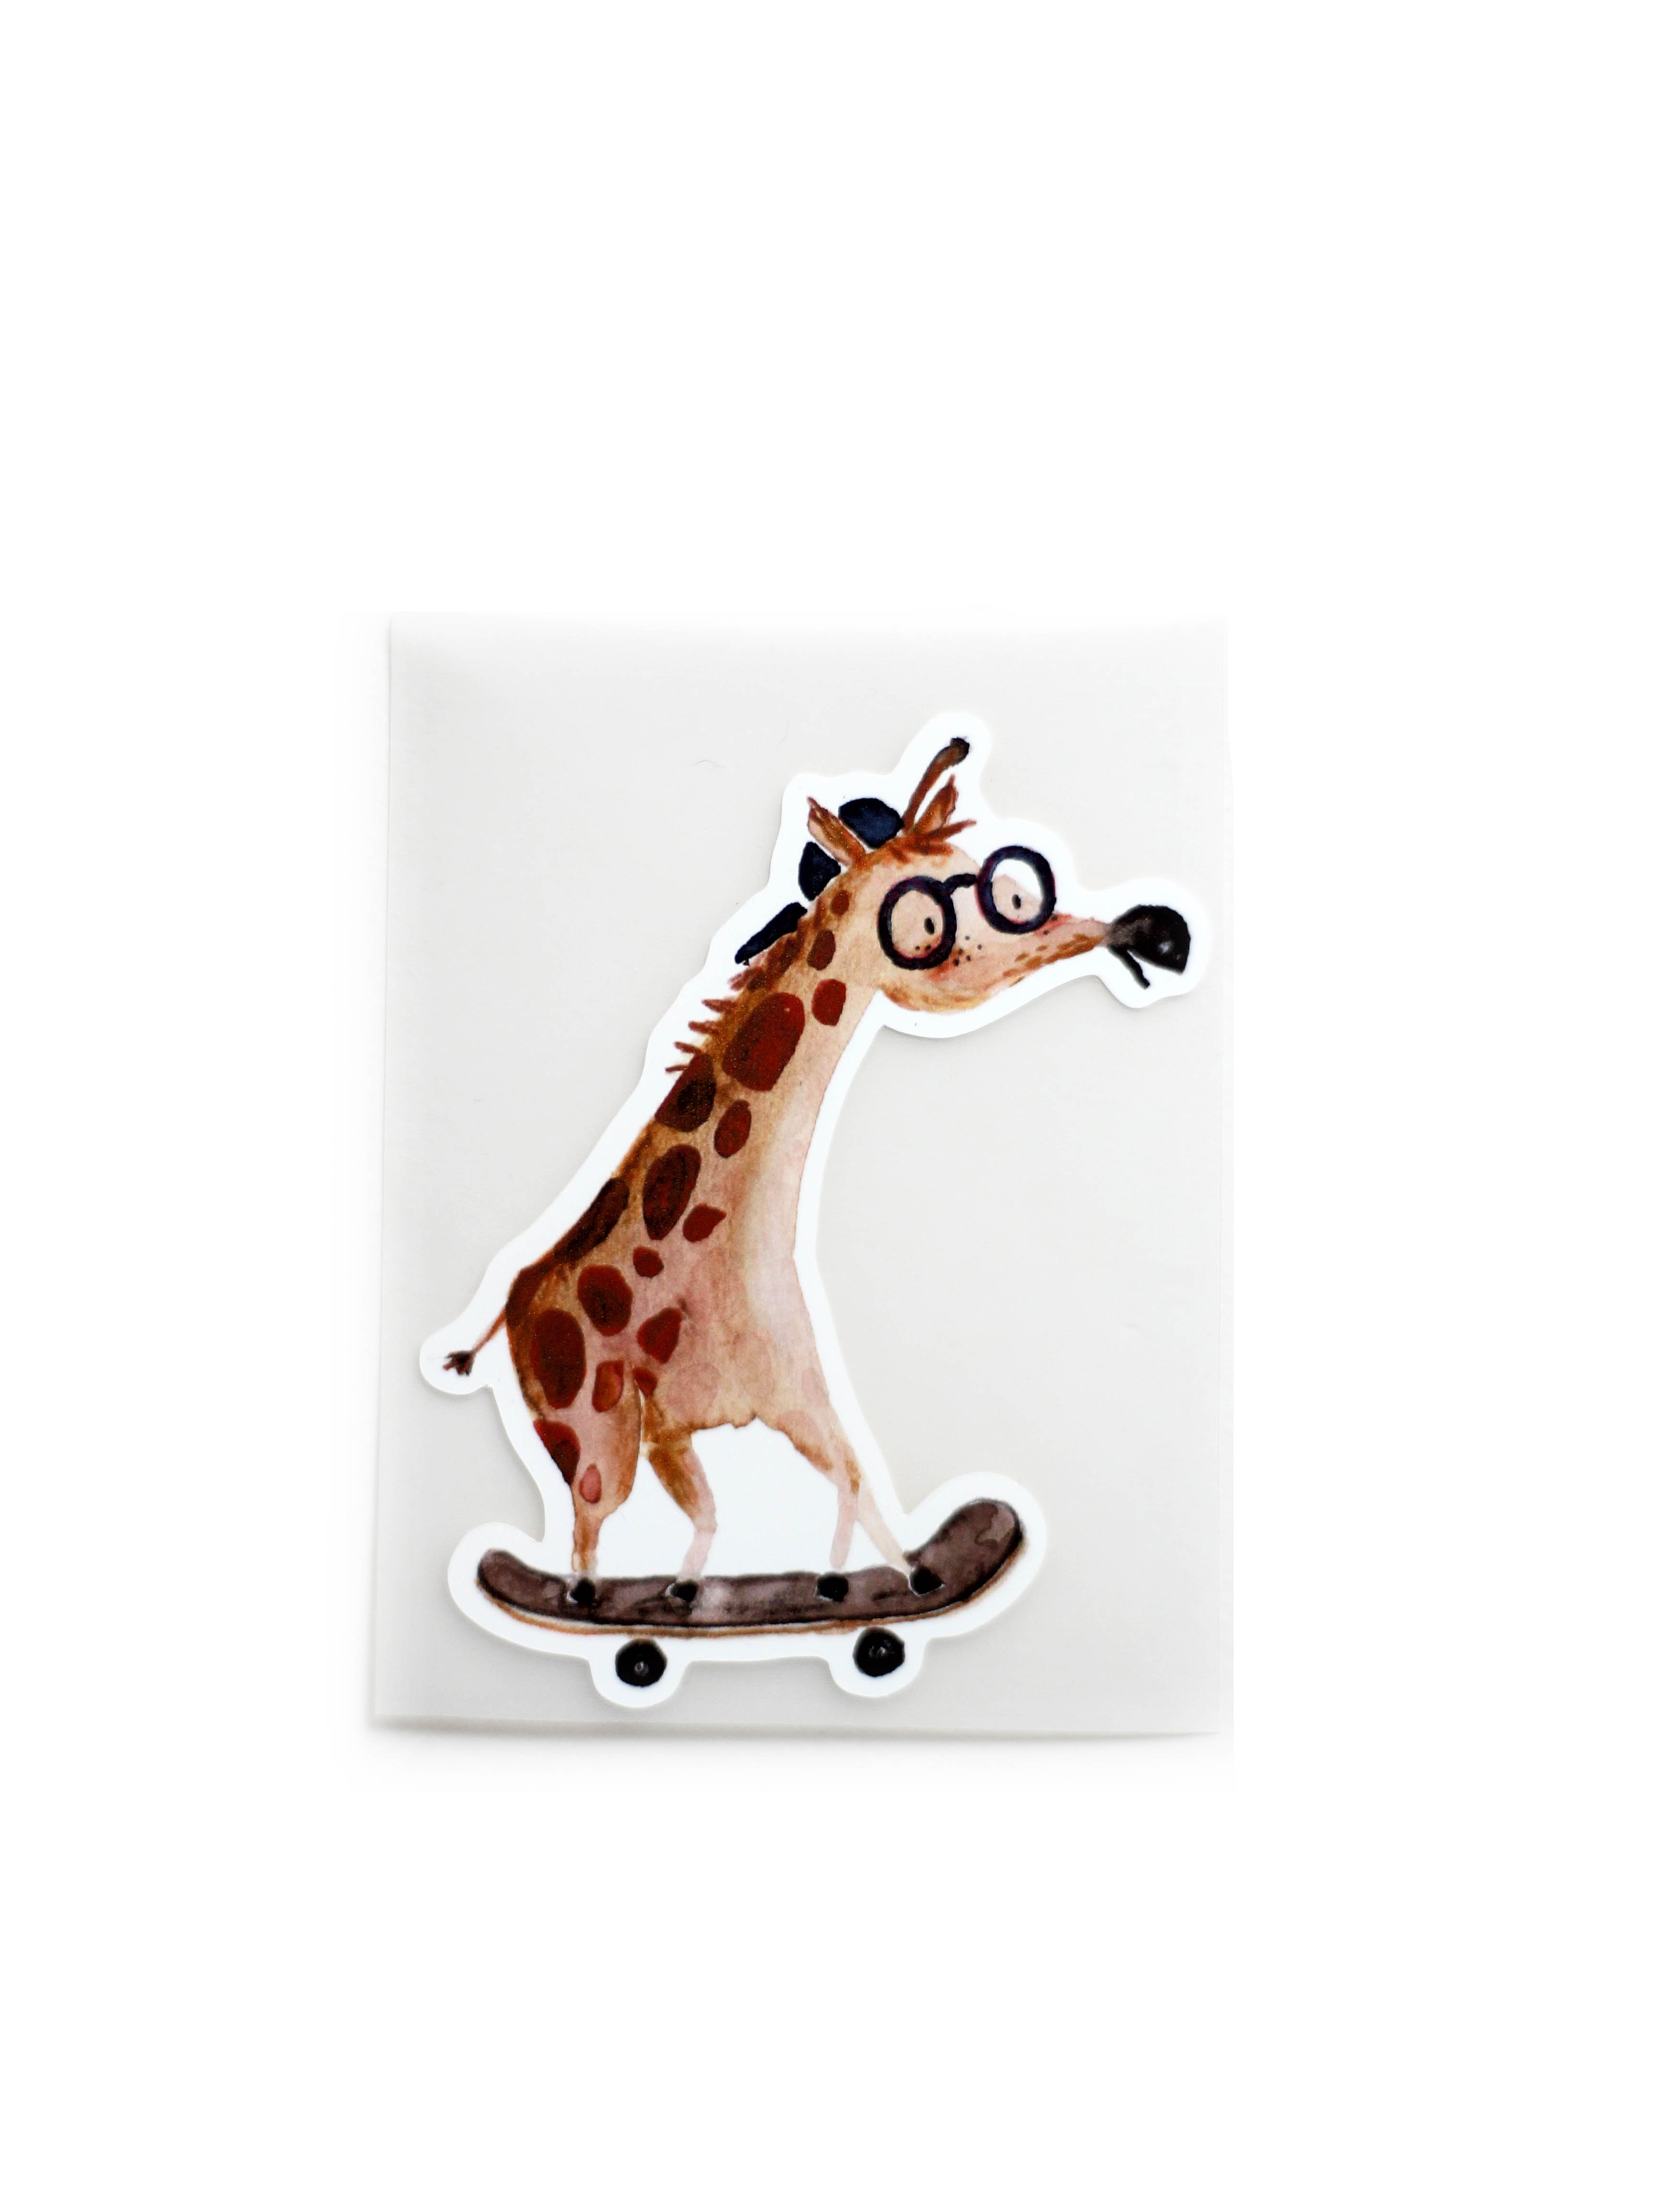 Bügelbild "Giraffe auf Skateboard" von Halfbird